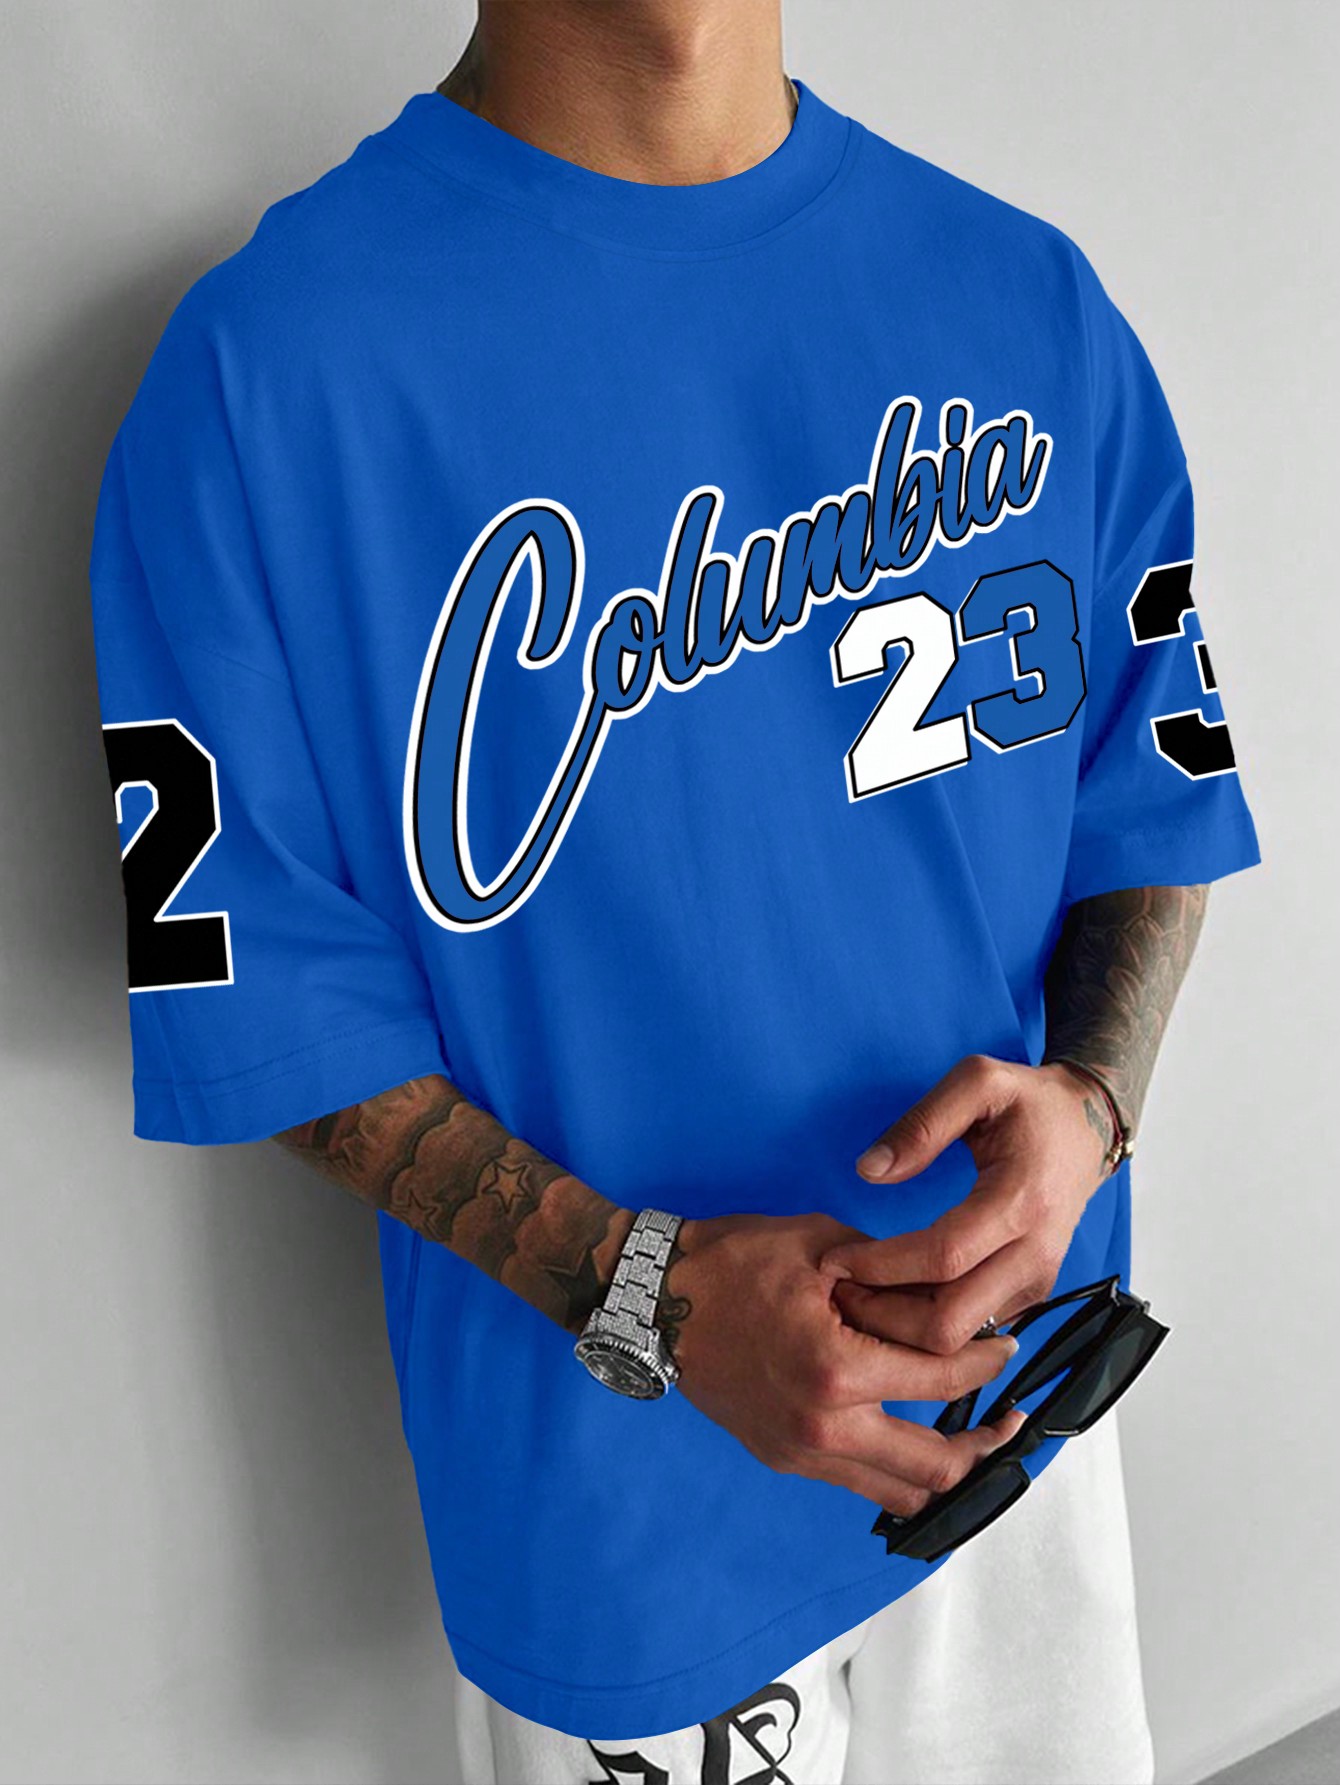 Мужская футболка большого размера с заниженными плечами и короткими рукавами Manfinity Sporsity с буквенным принтом, синий